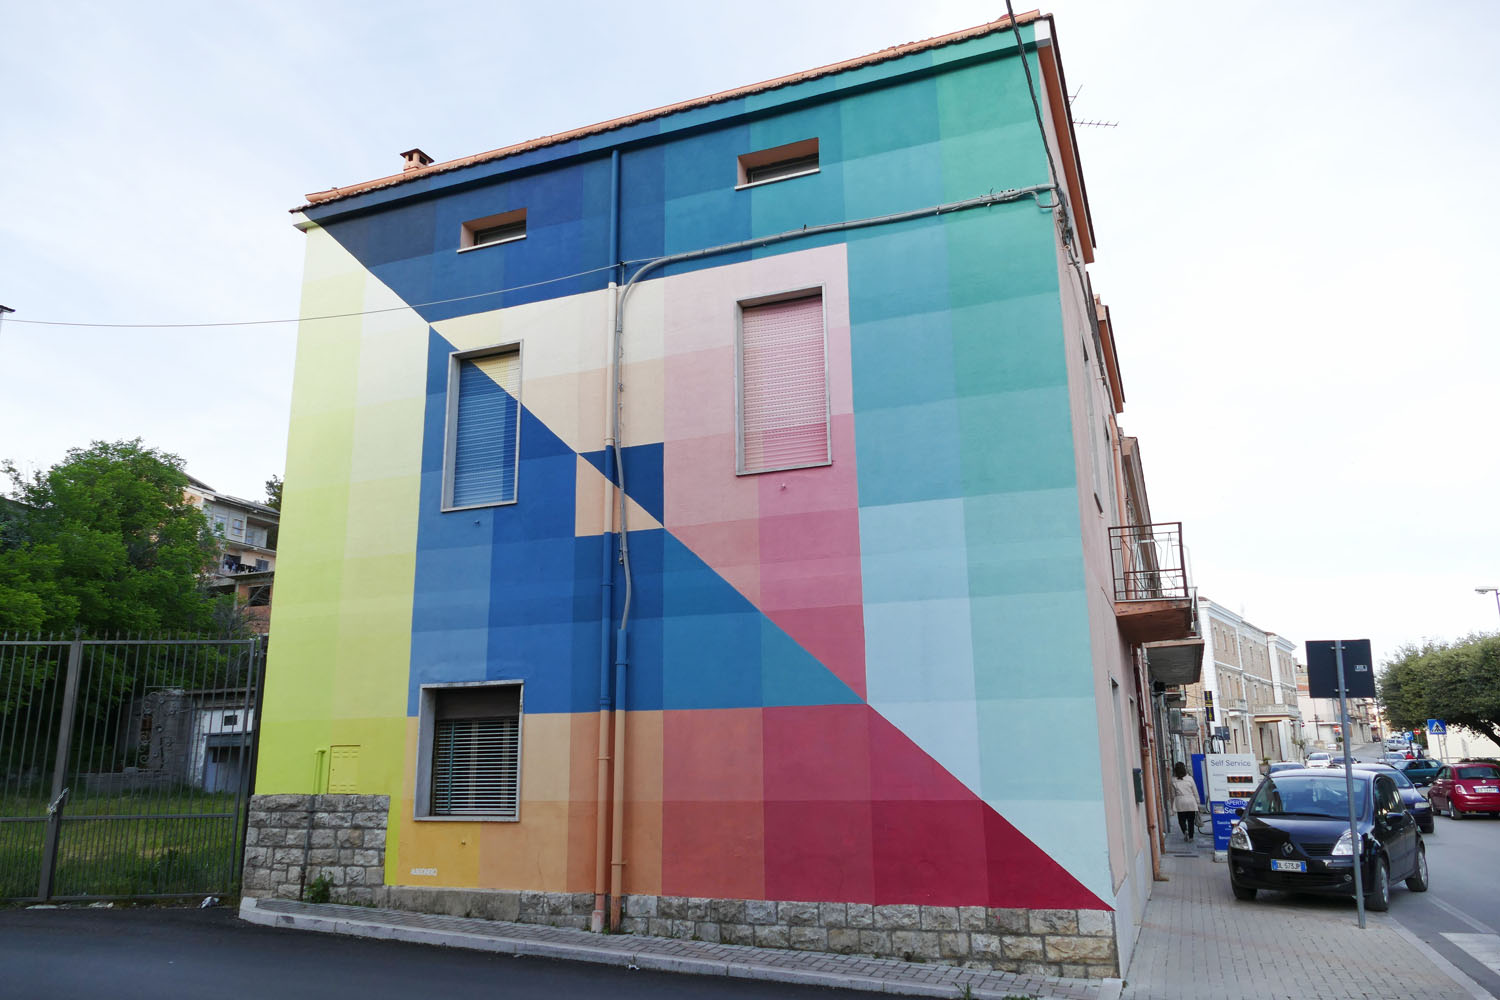 Street Art a Santa Croce di Magliano: Two Surfaces And Four Intersections, 88 Tones di Alberonero